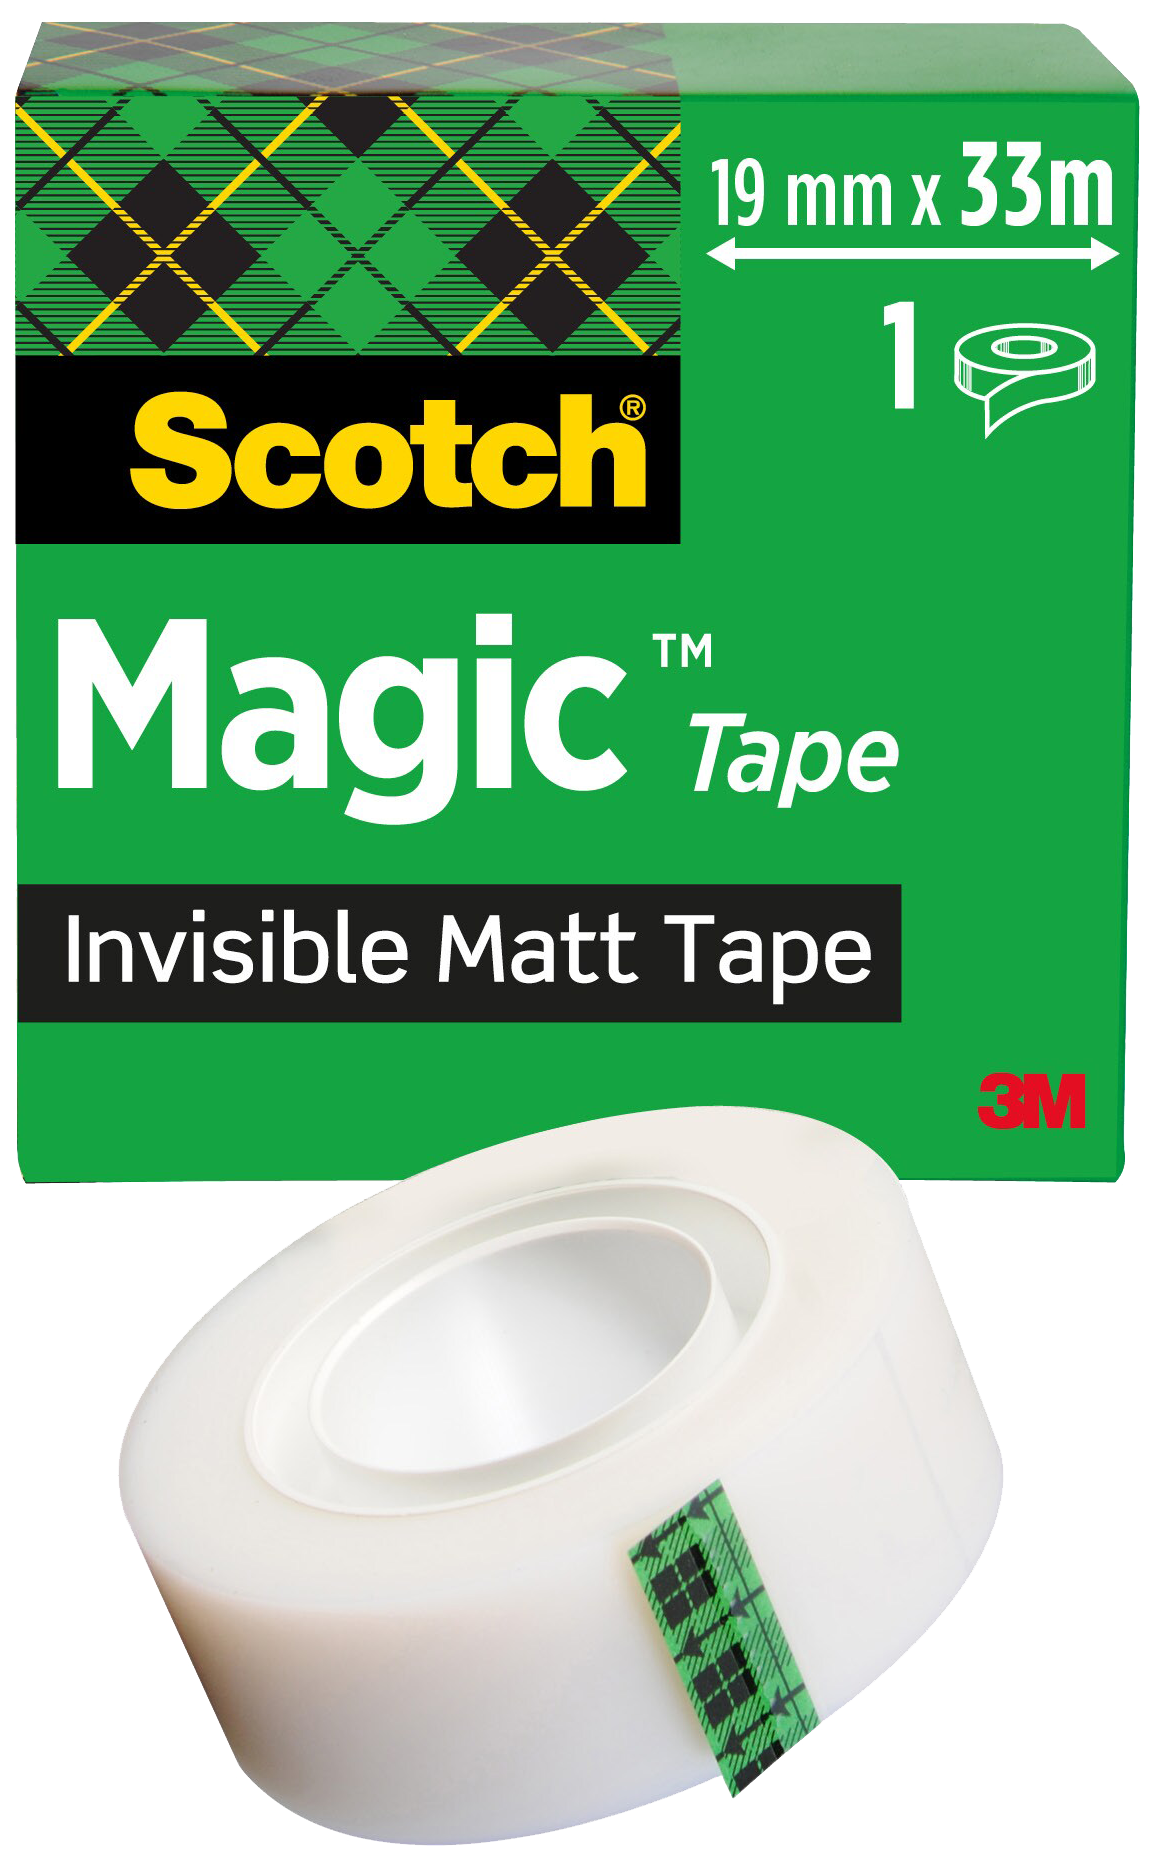 Scotch Magic tape mat 'englehud' 19mmÃ33m 375711